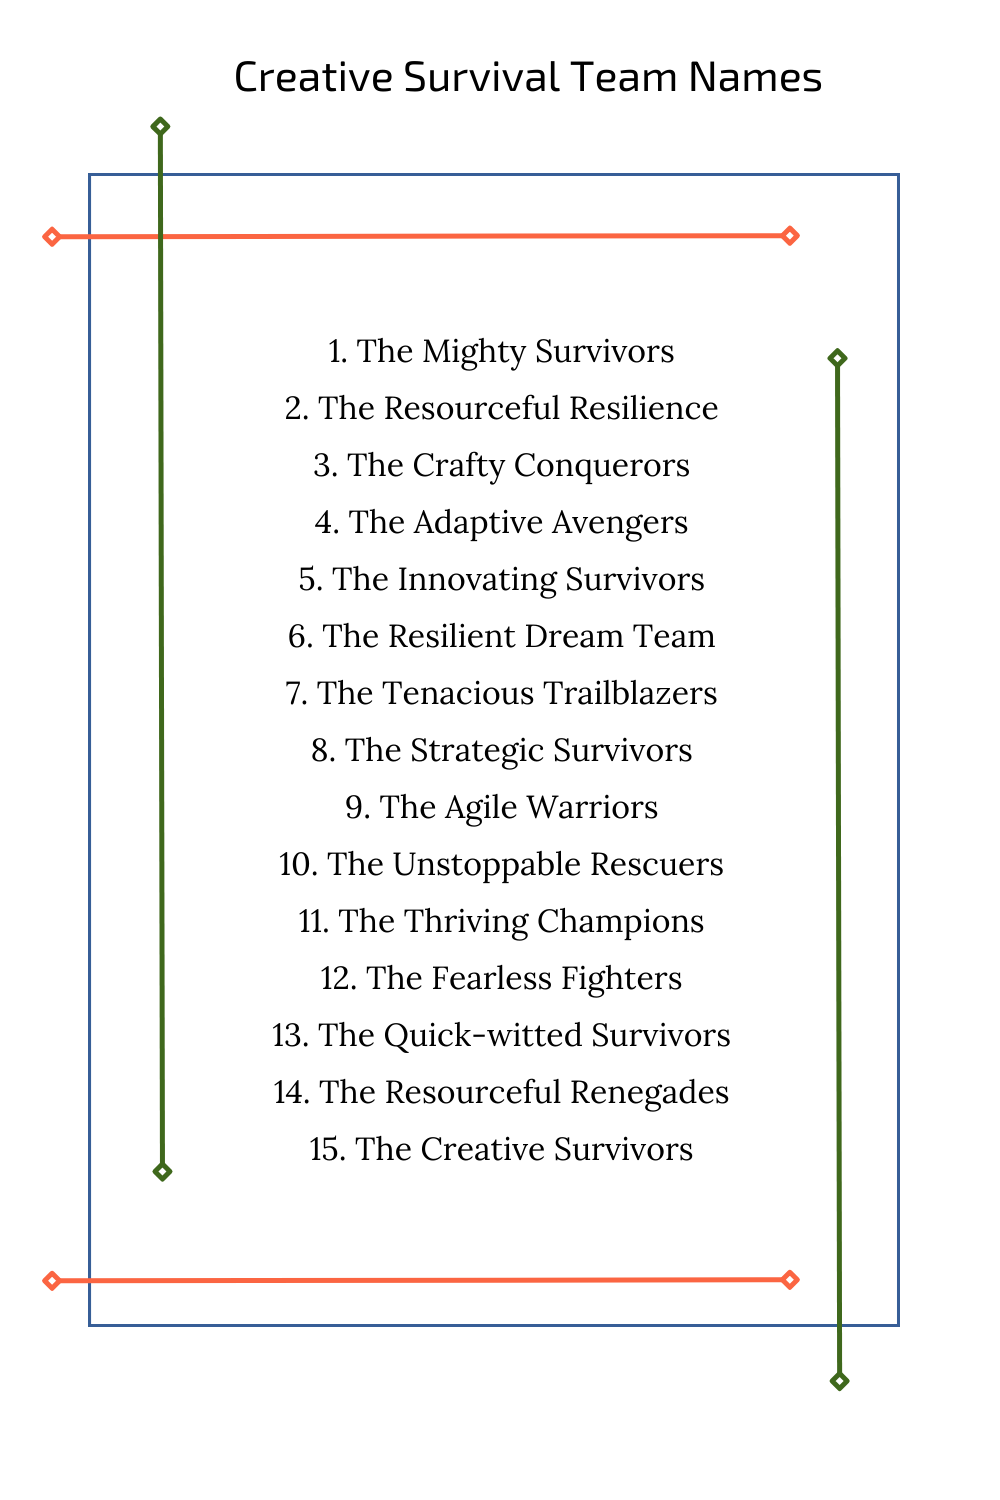 Creative Survival Team Names